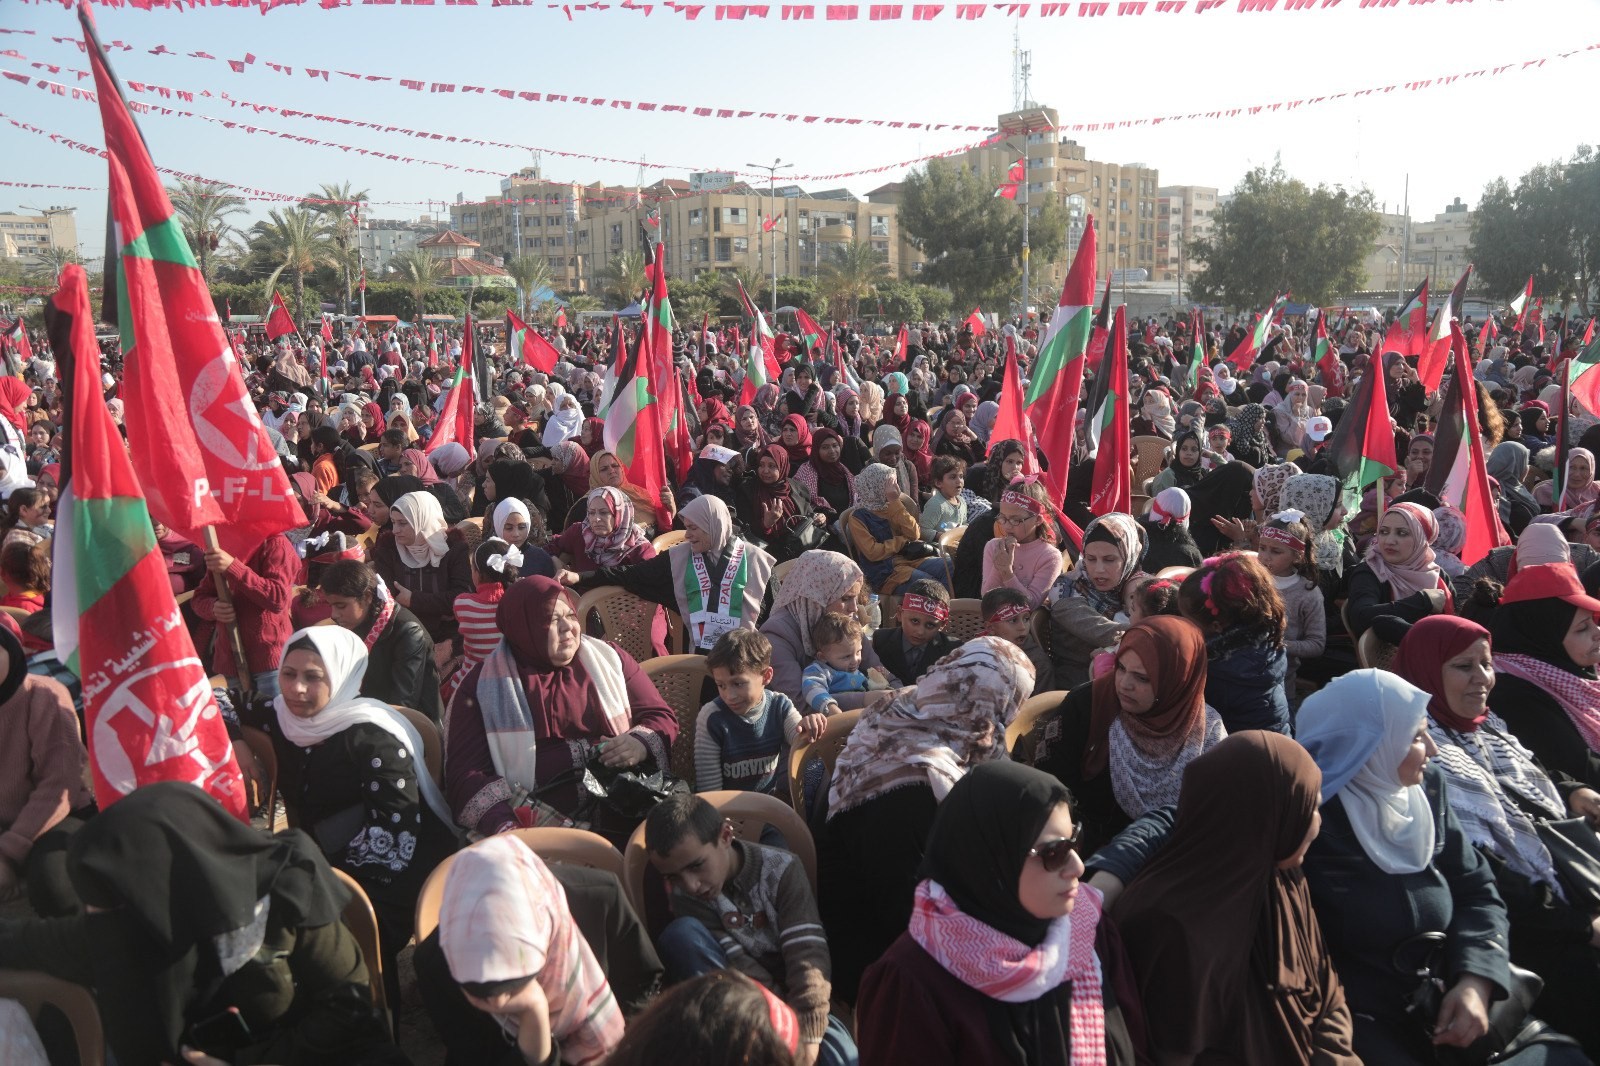 عشرات الآلاف يُشاركون في المهرجان الوطني (انطلاقتنا مقاومة) في ساحة الكتيبة بمدينة غزة لإحياء ذكرى انطلاقة الجبهة الشعبيّة لتحرير فلسطين الـ55. 86.jpg